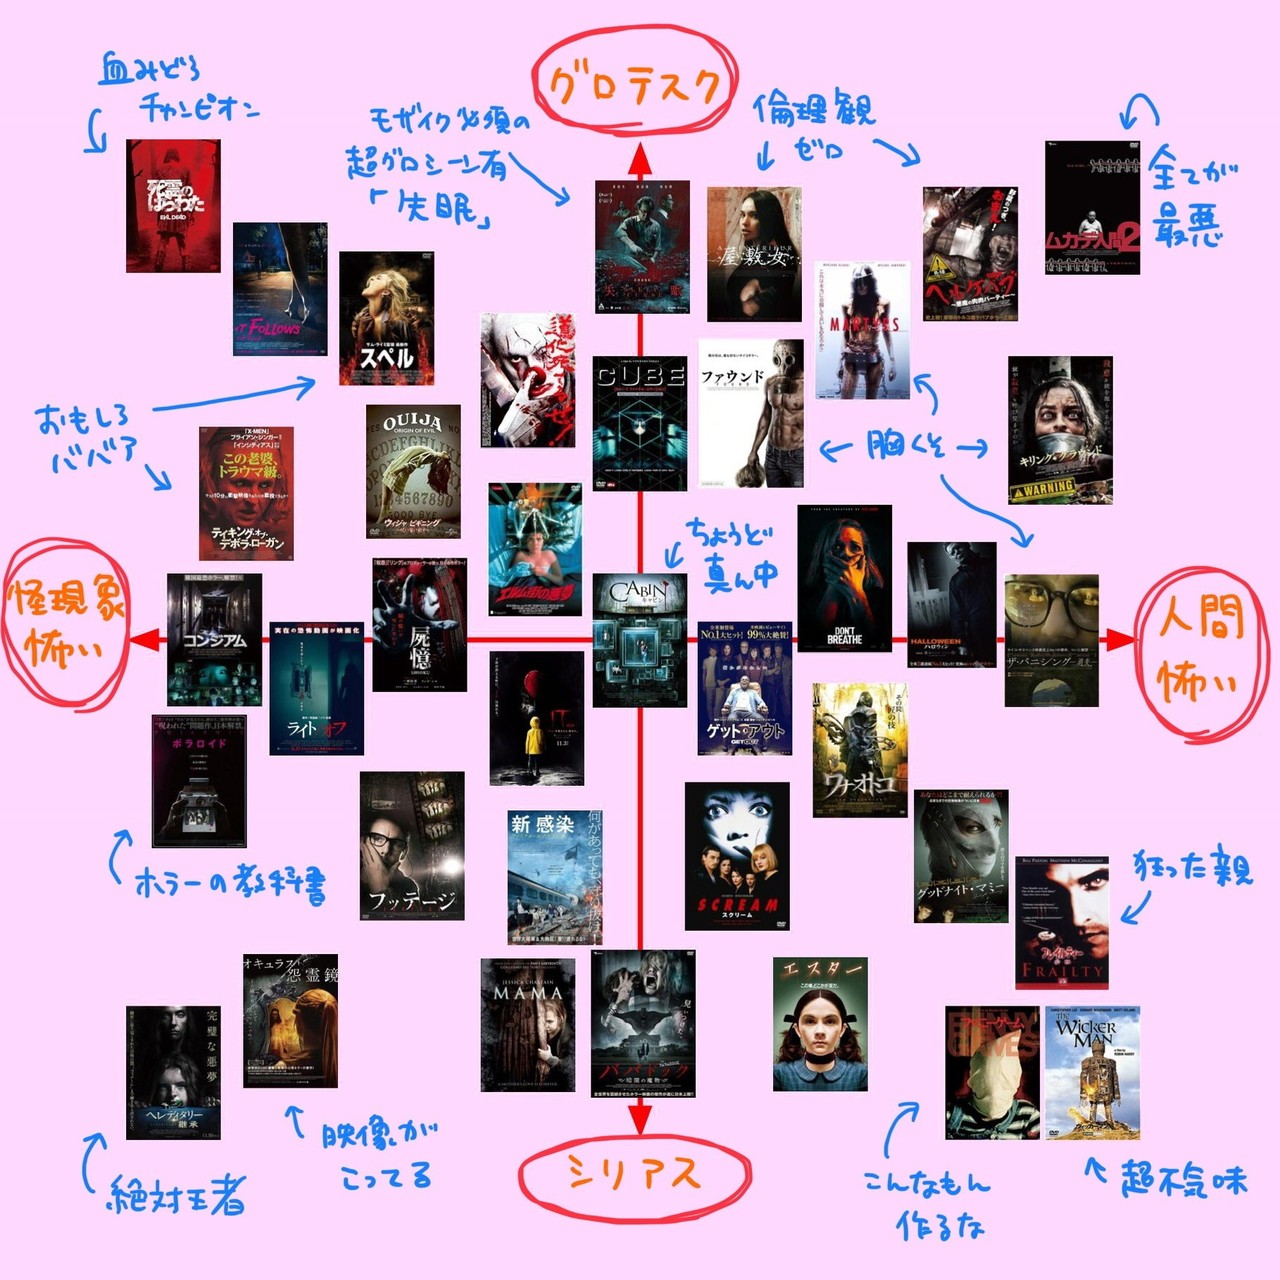 ホラー映画のジャンル分布図を作った Yuki Makino Note